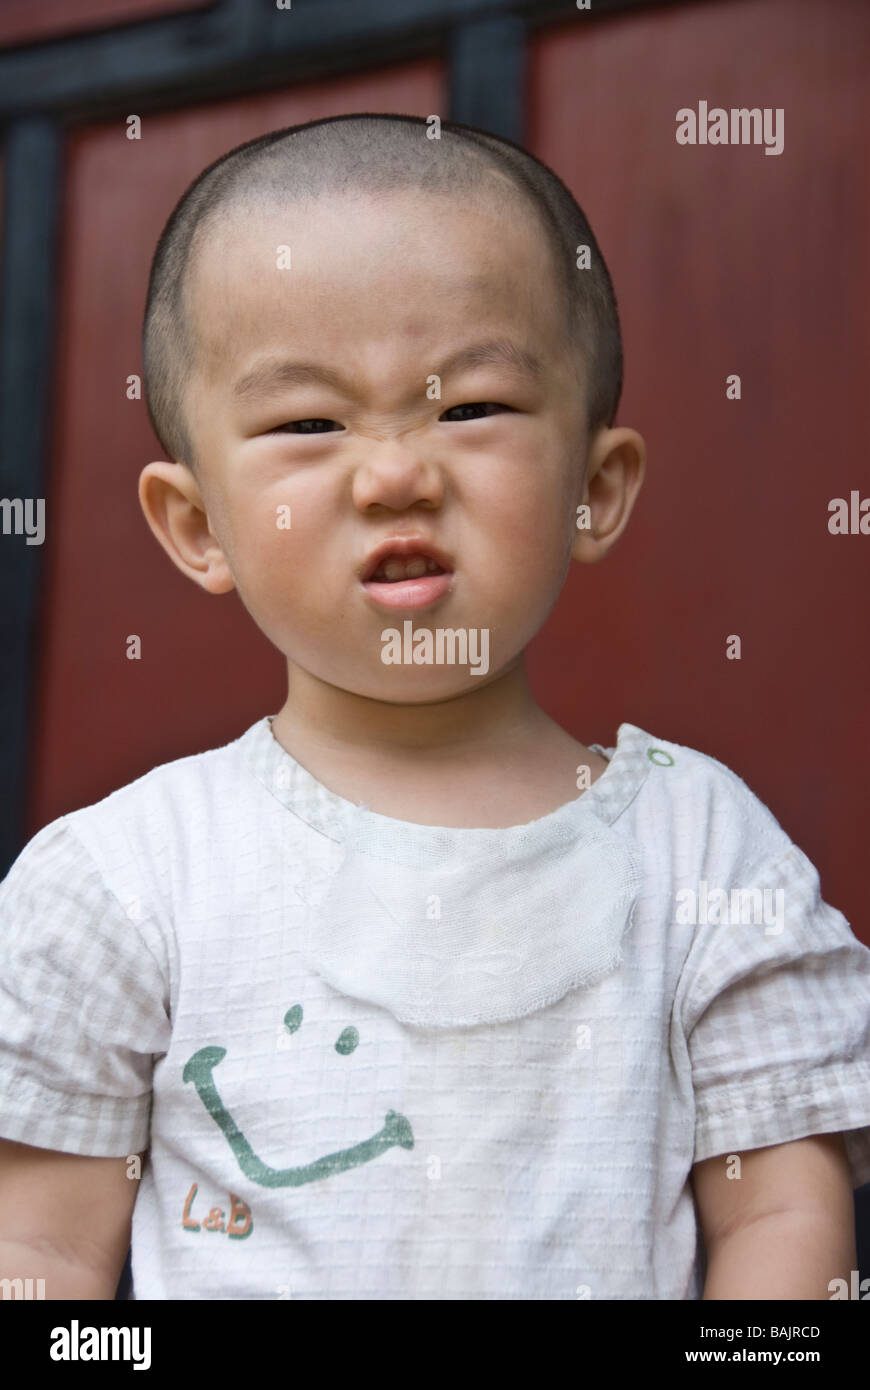 Chinesische Kinder Lustige Gesichter Chengdu Sichuan China Zu Tun Stockfoto Bild 23770445 